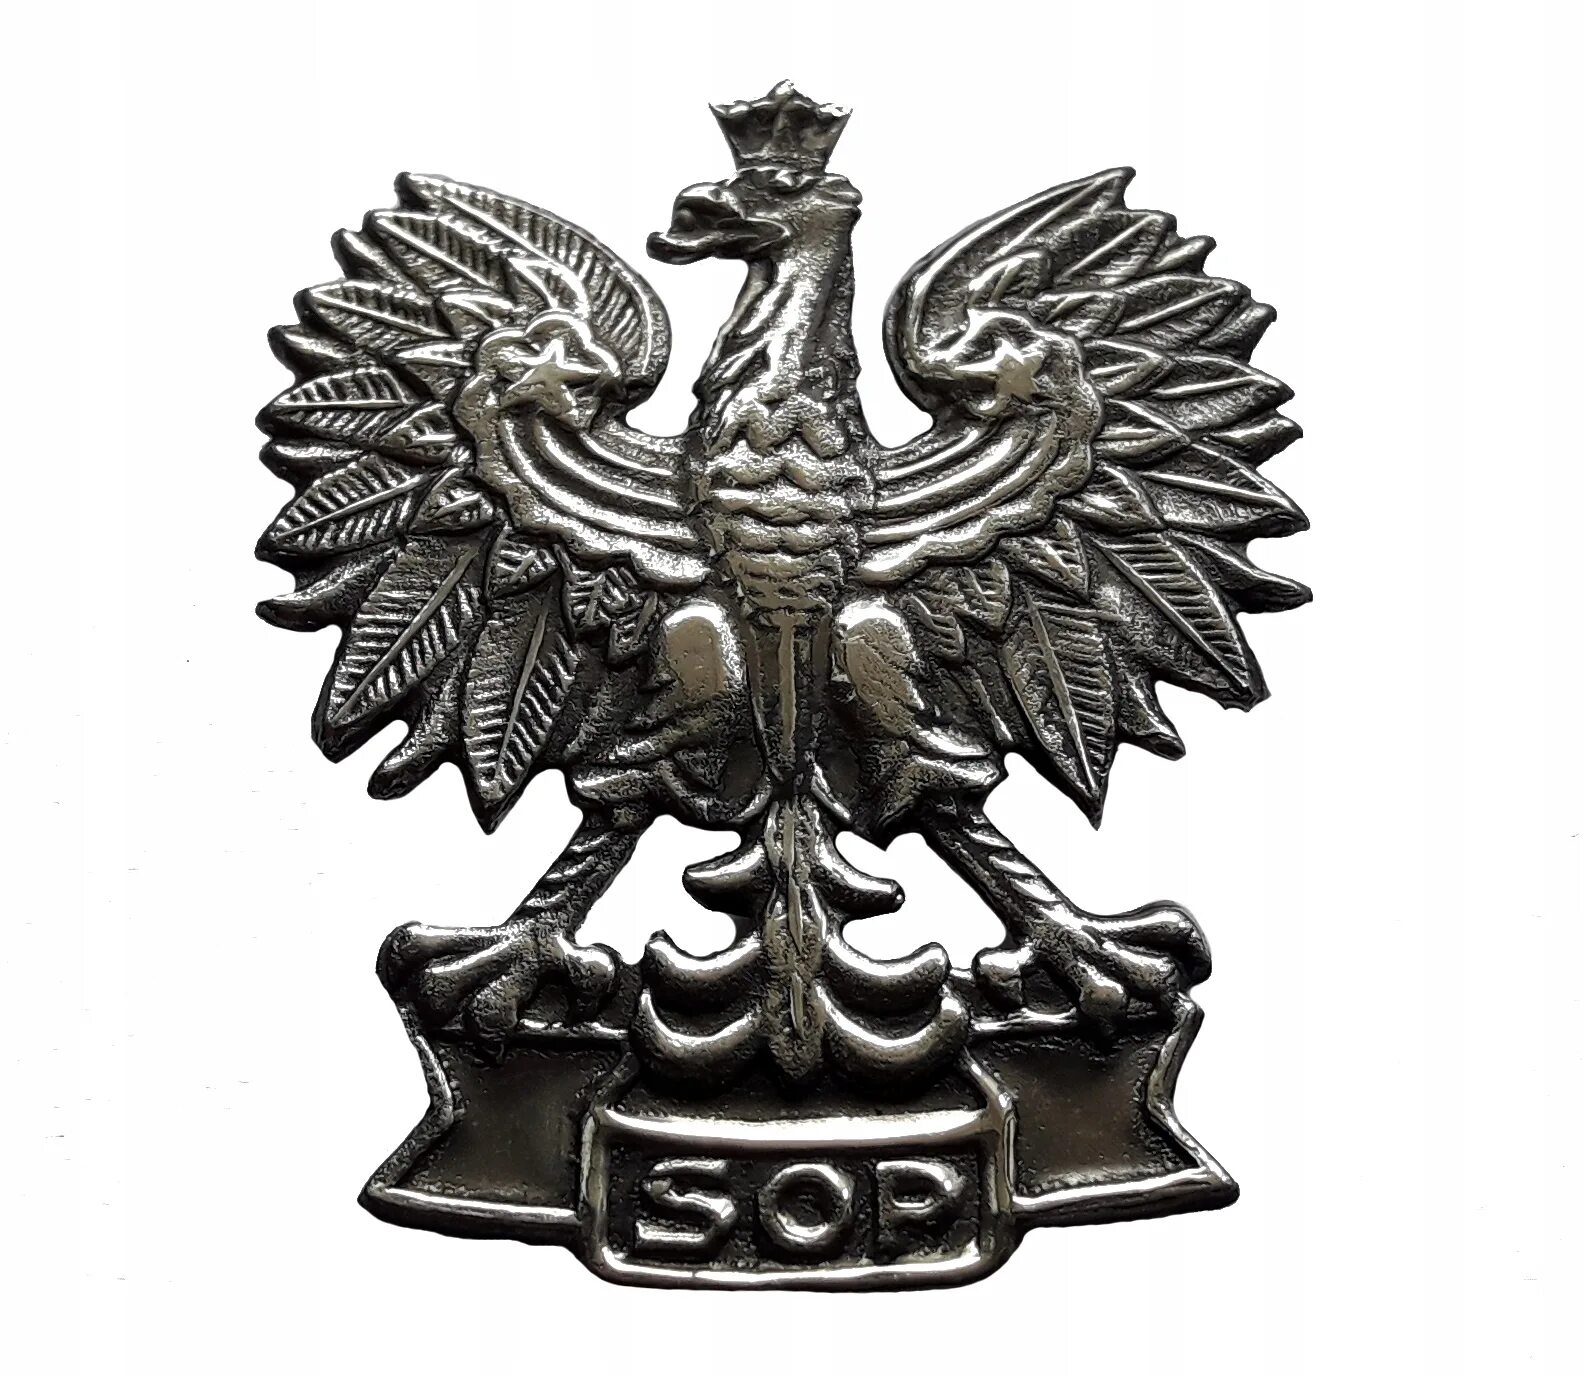 Металлический Орел. Значок орла. Фирма со значком орла. Орел на польском оружии.